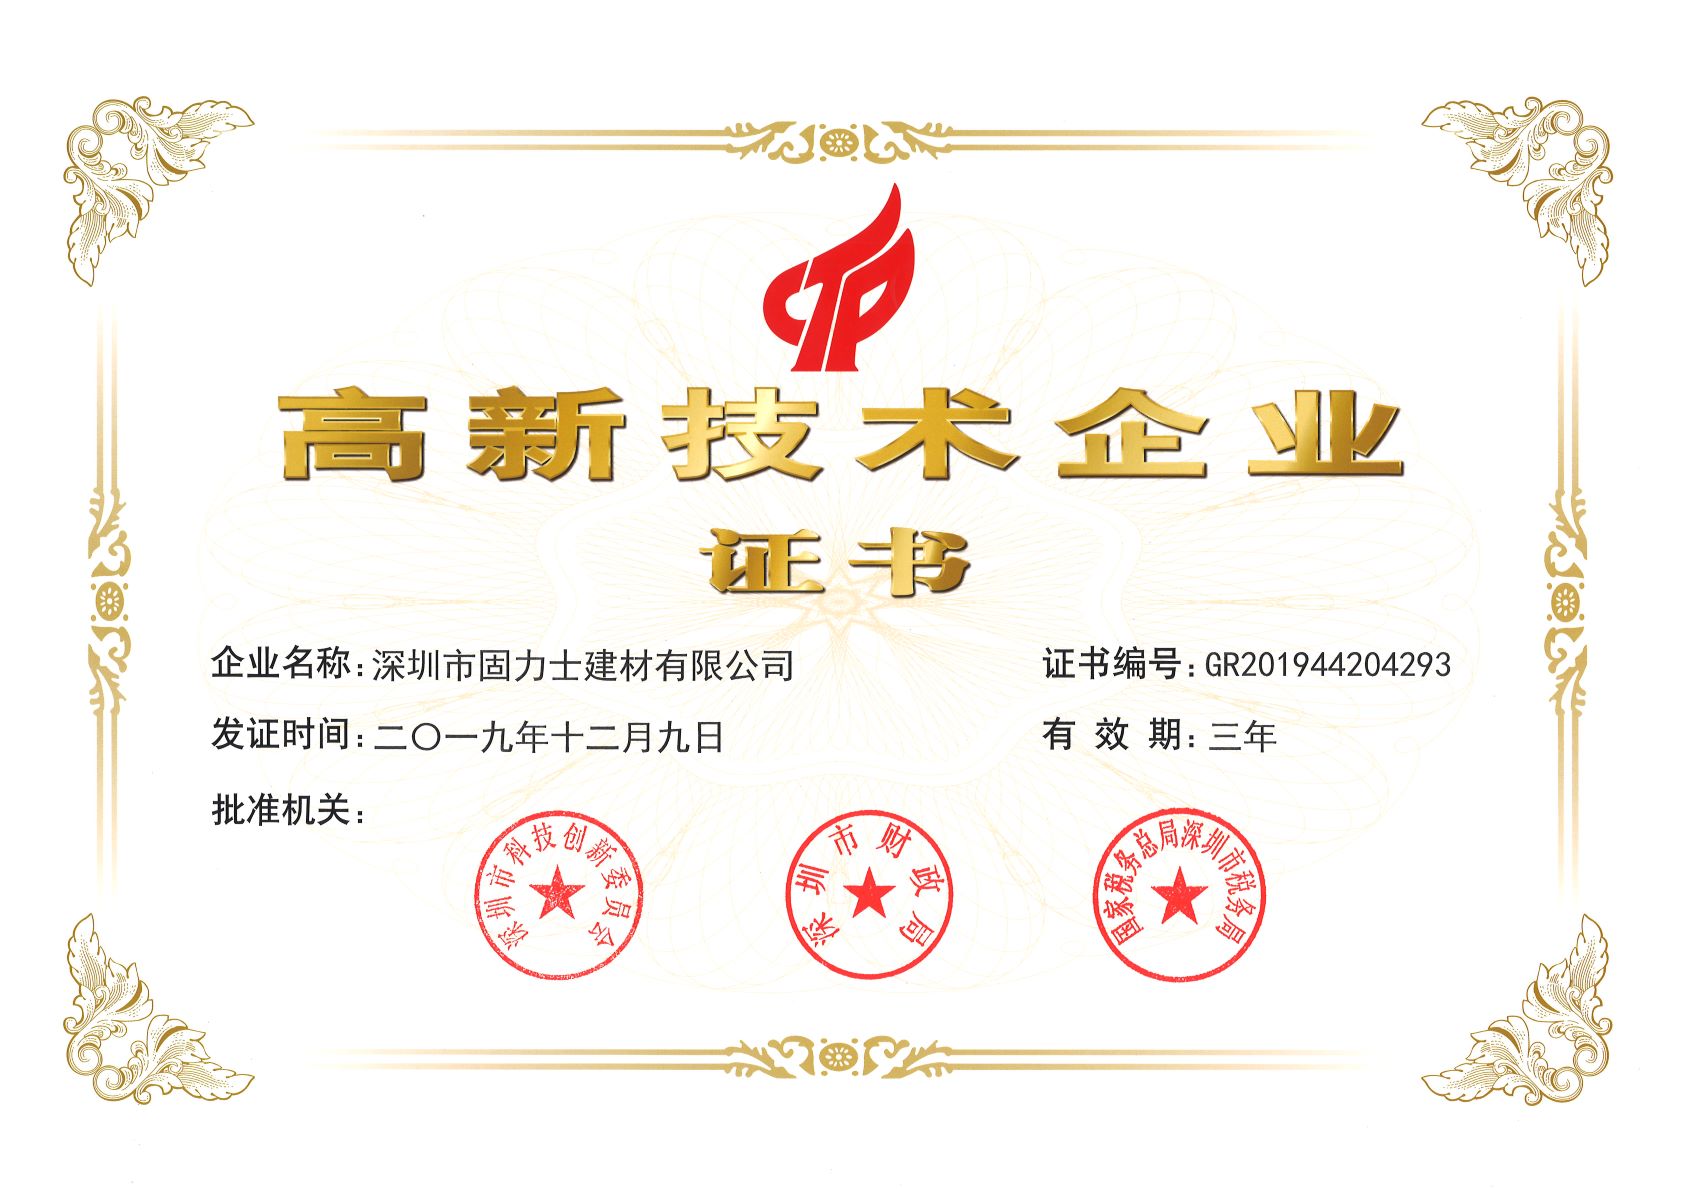 松原热烈祝贺深圳市固力士建材有限公司通过高新技术企业认证